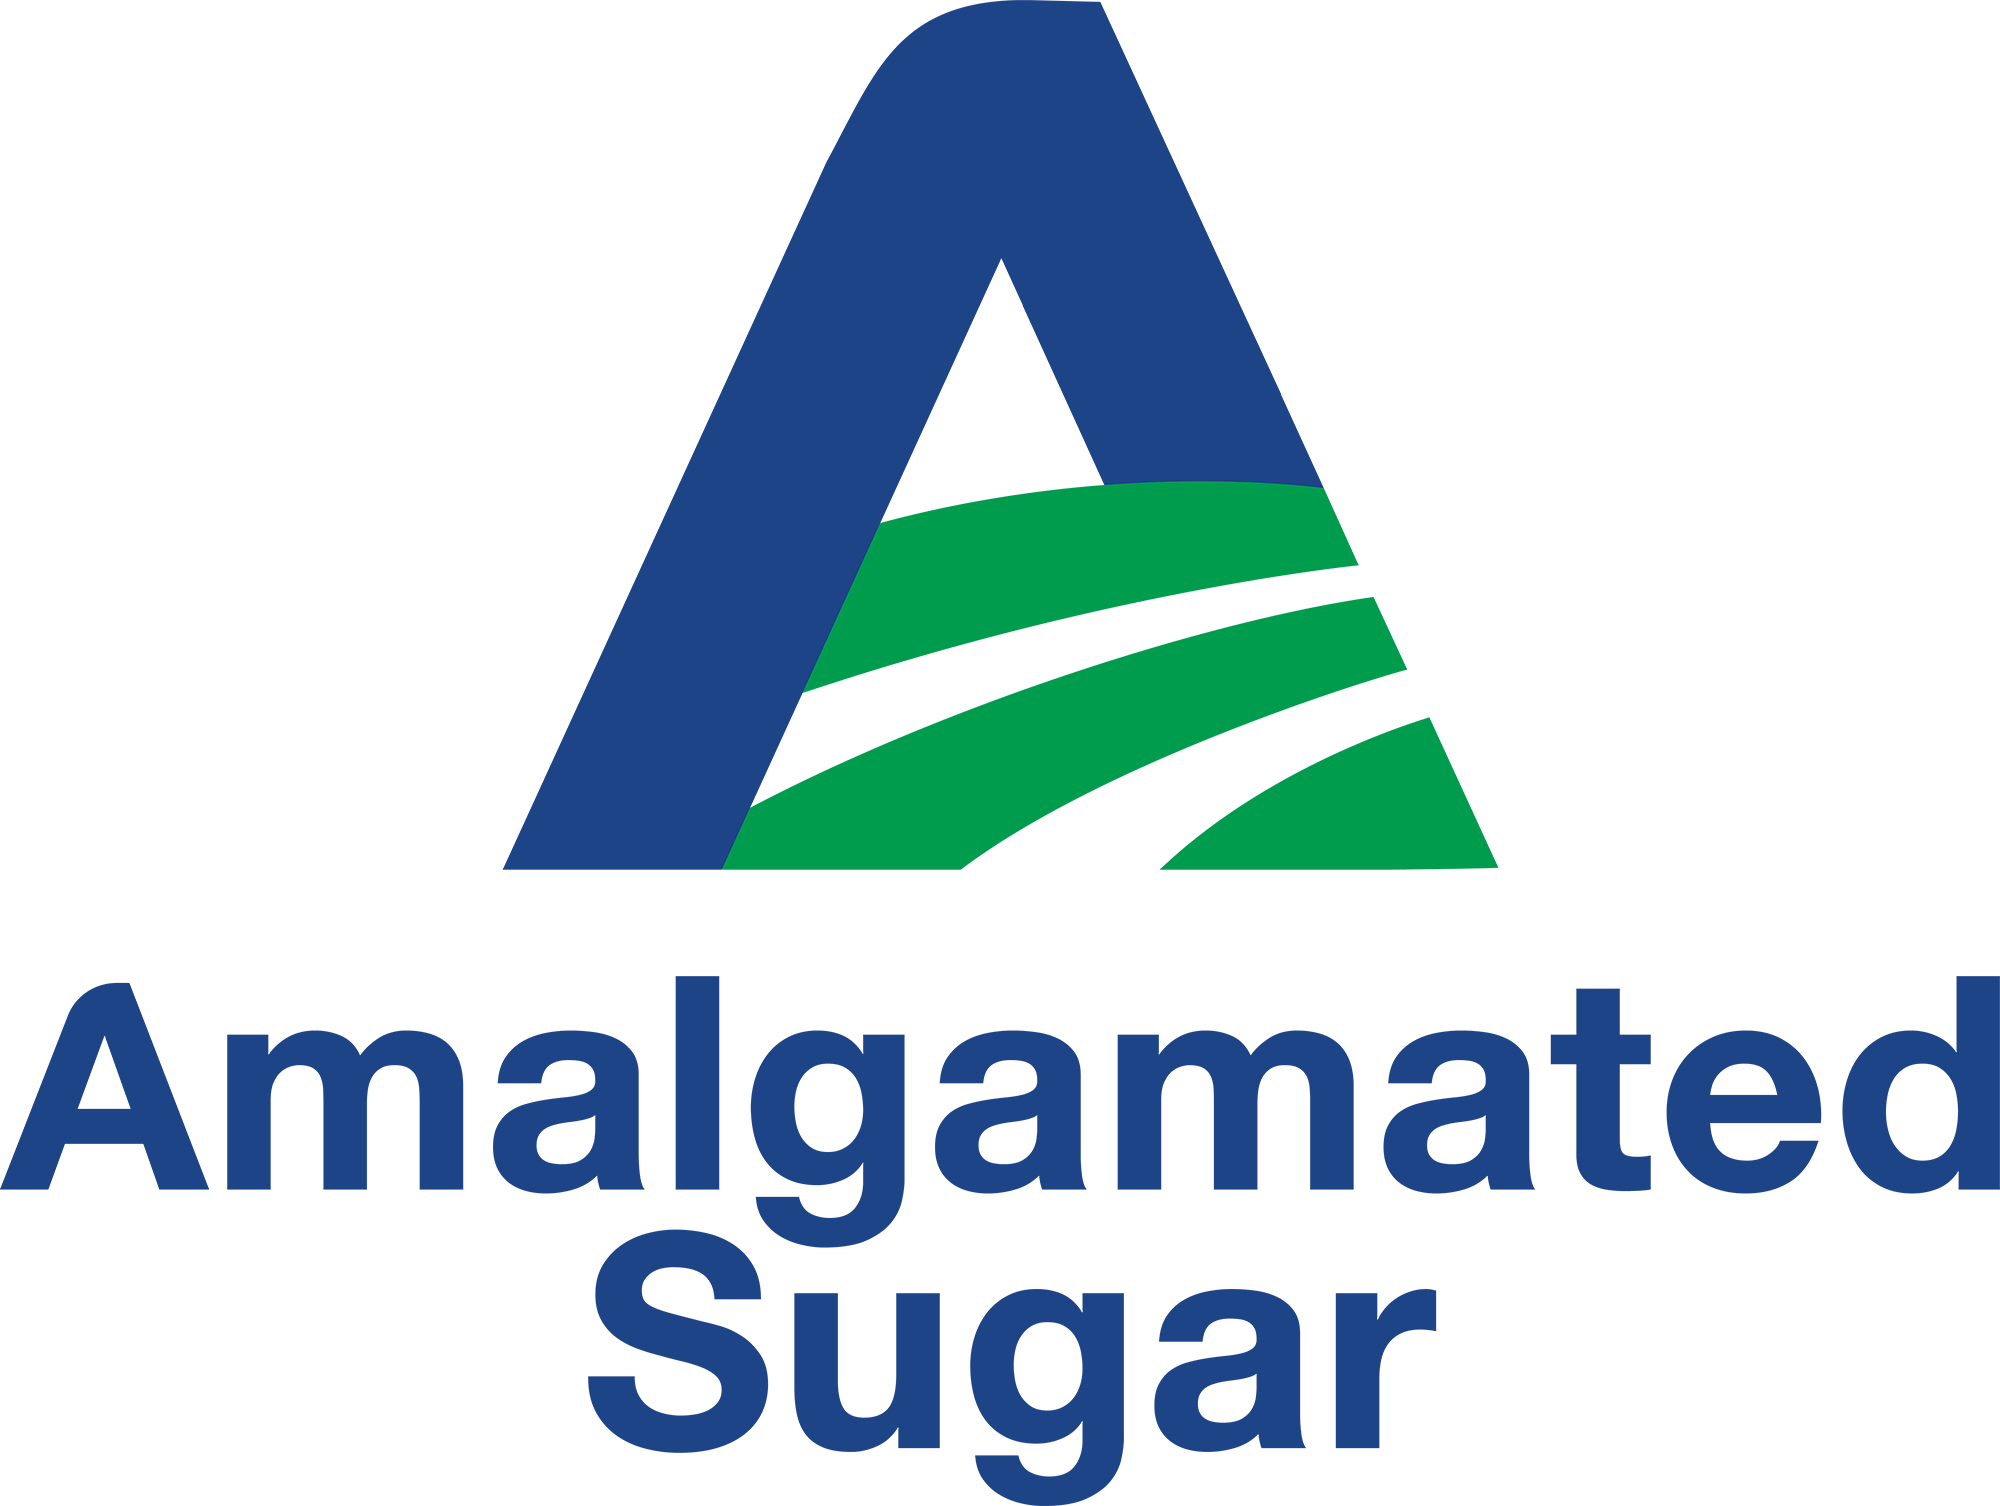 Amalgamated Sugar